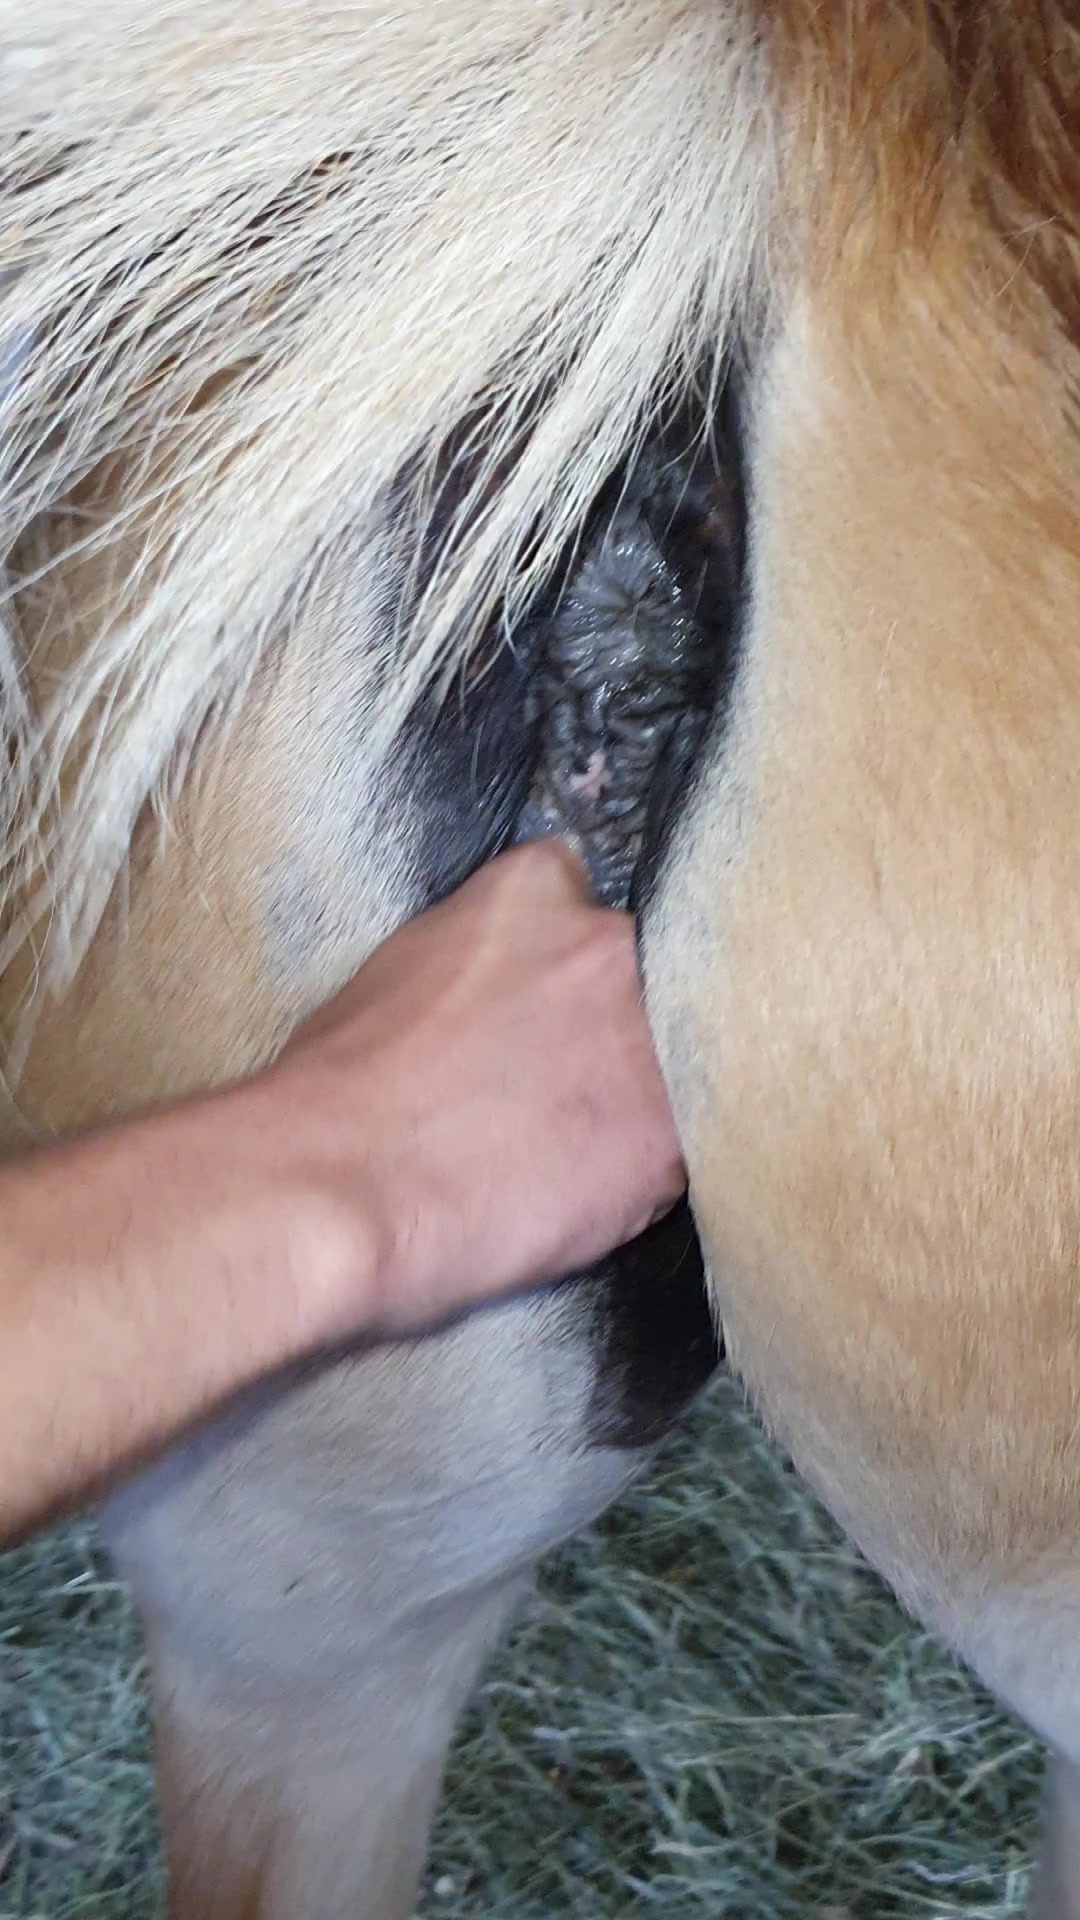 Horse sprays cum on woman face